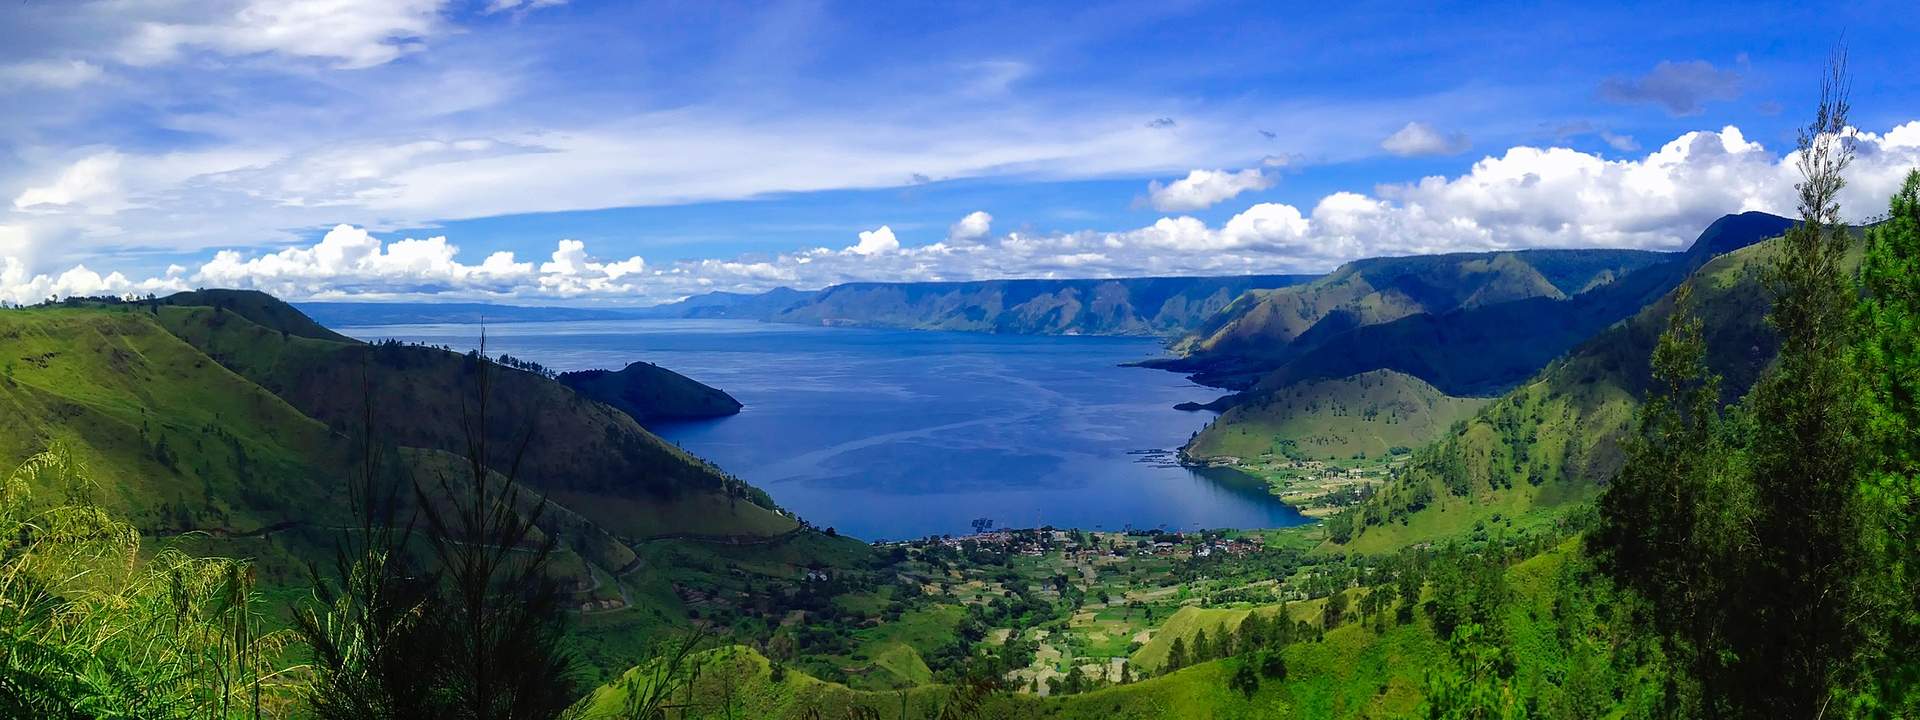 Una crociera indimenticabile nel più grande arcipelago del mondo: Indonesia